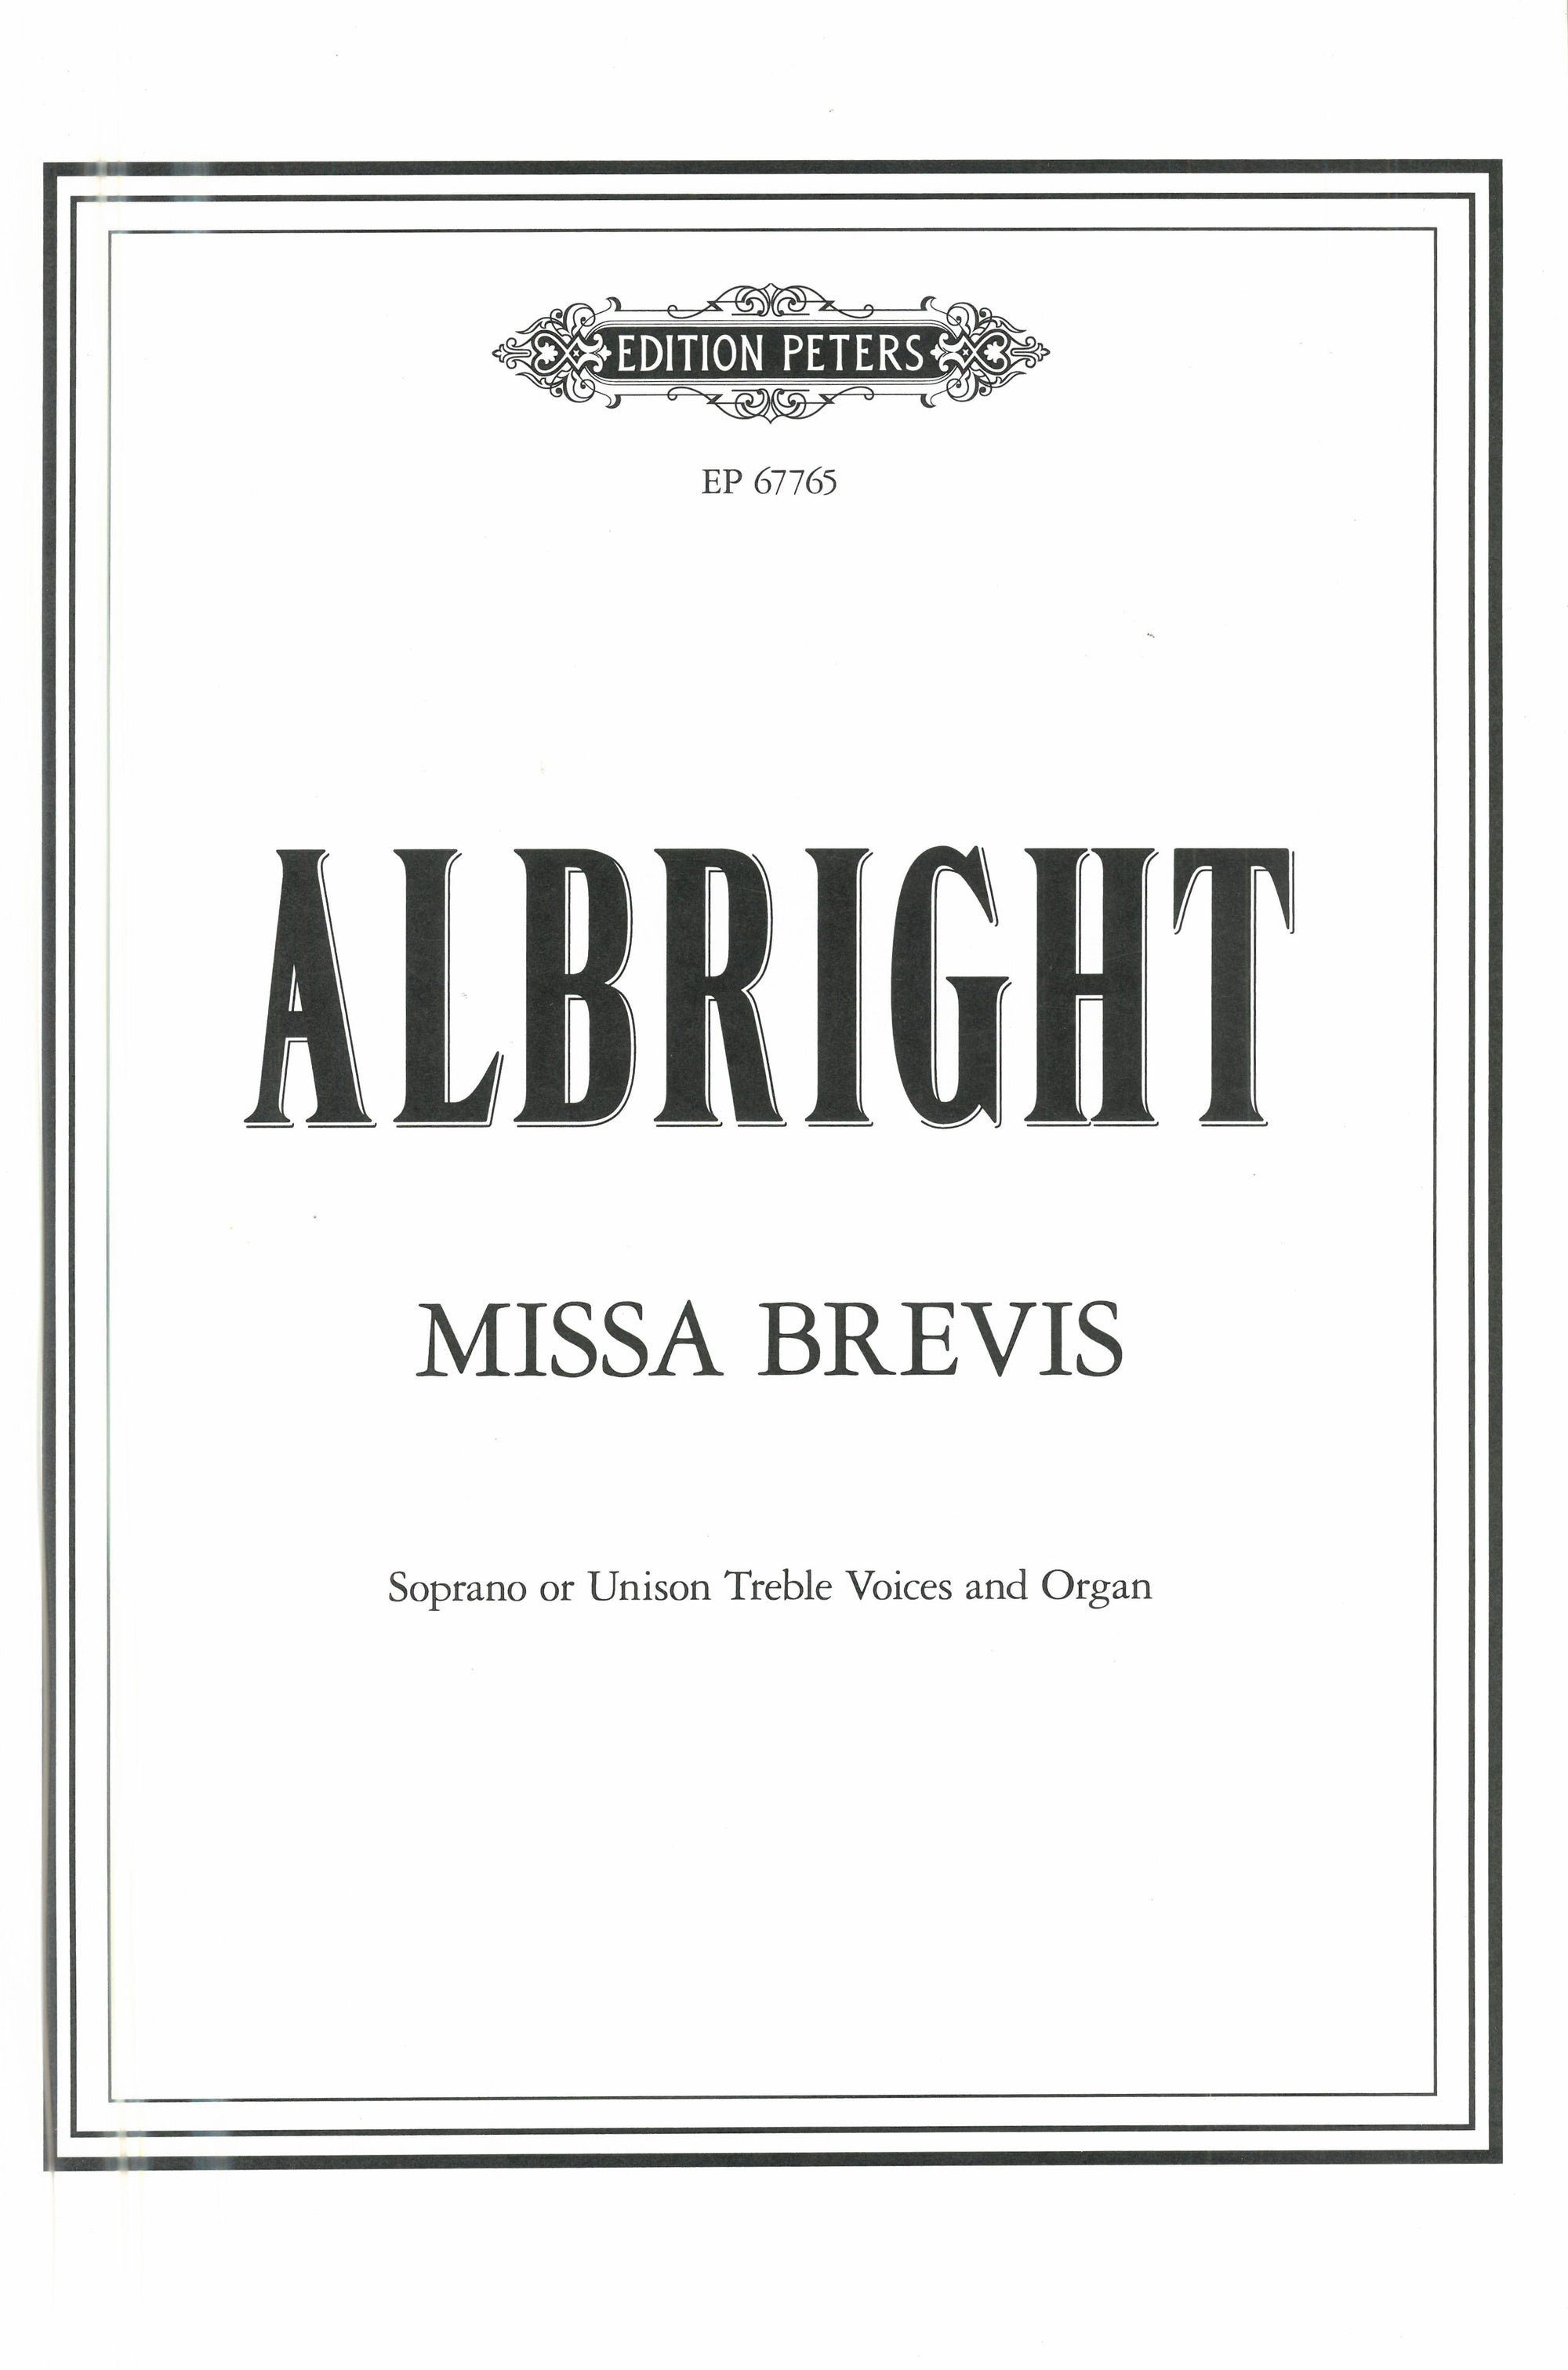 Albright: Missa Brevis